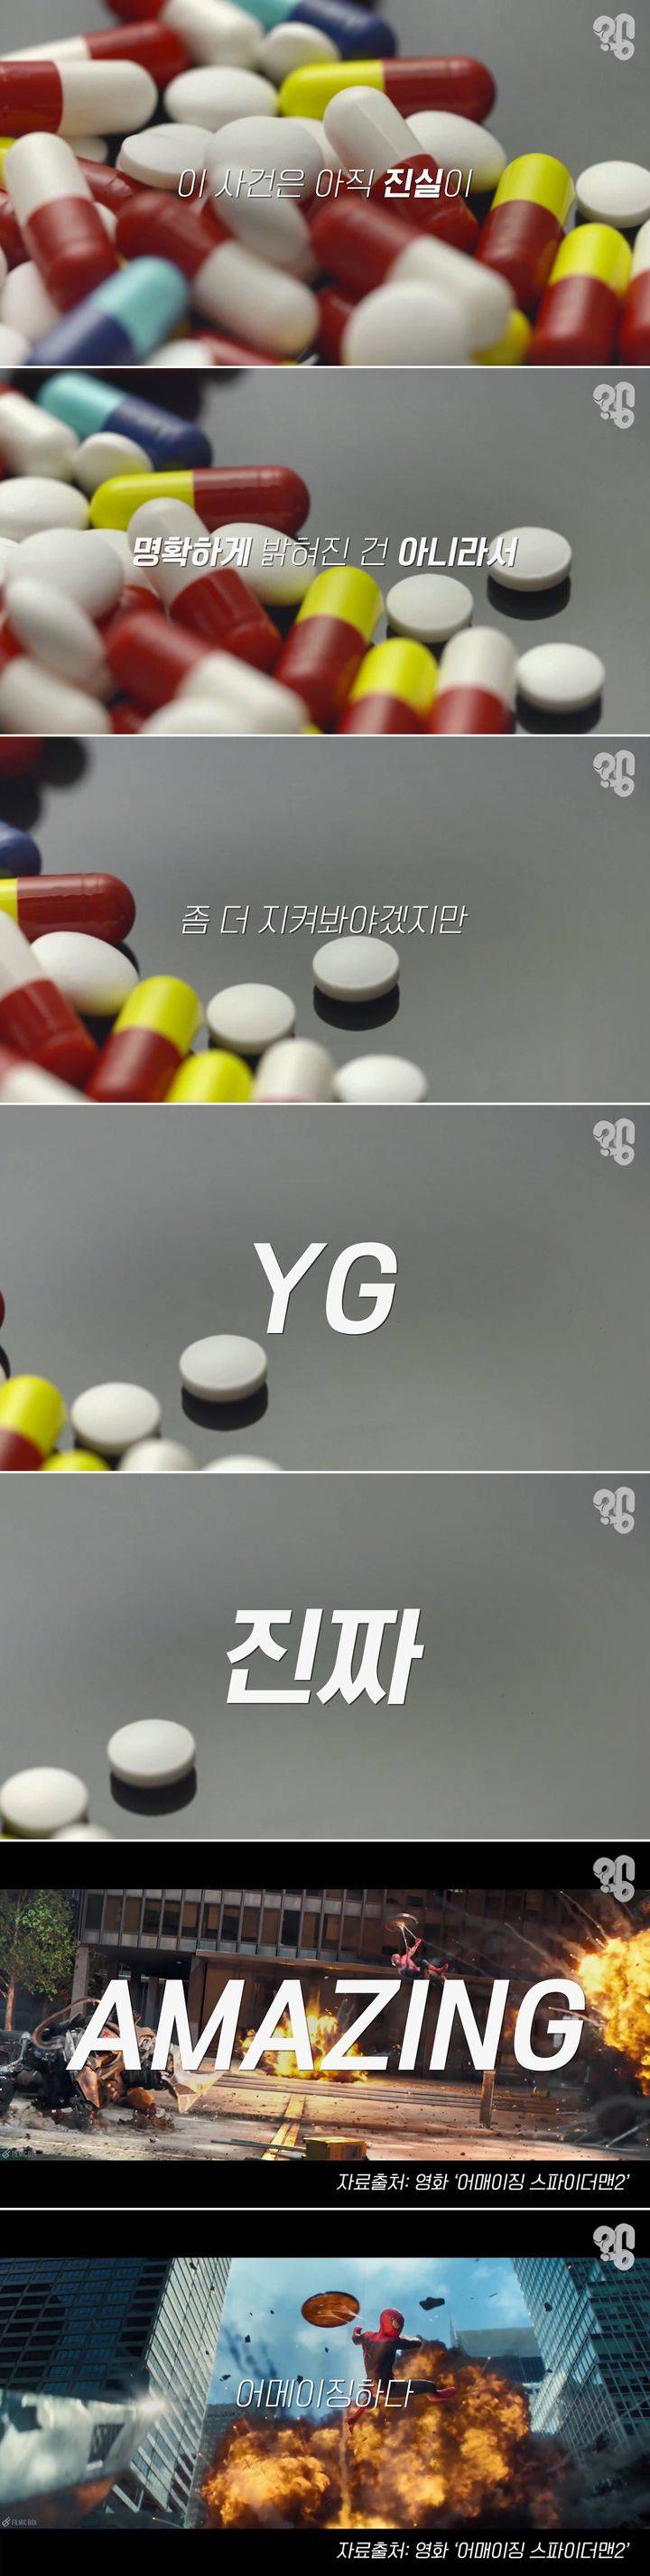 YG 양현석이 말한 '몸속에서 마약 성분을 빼내는 방법' 실제로 있을까? | 인스티즈